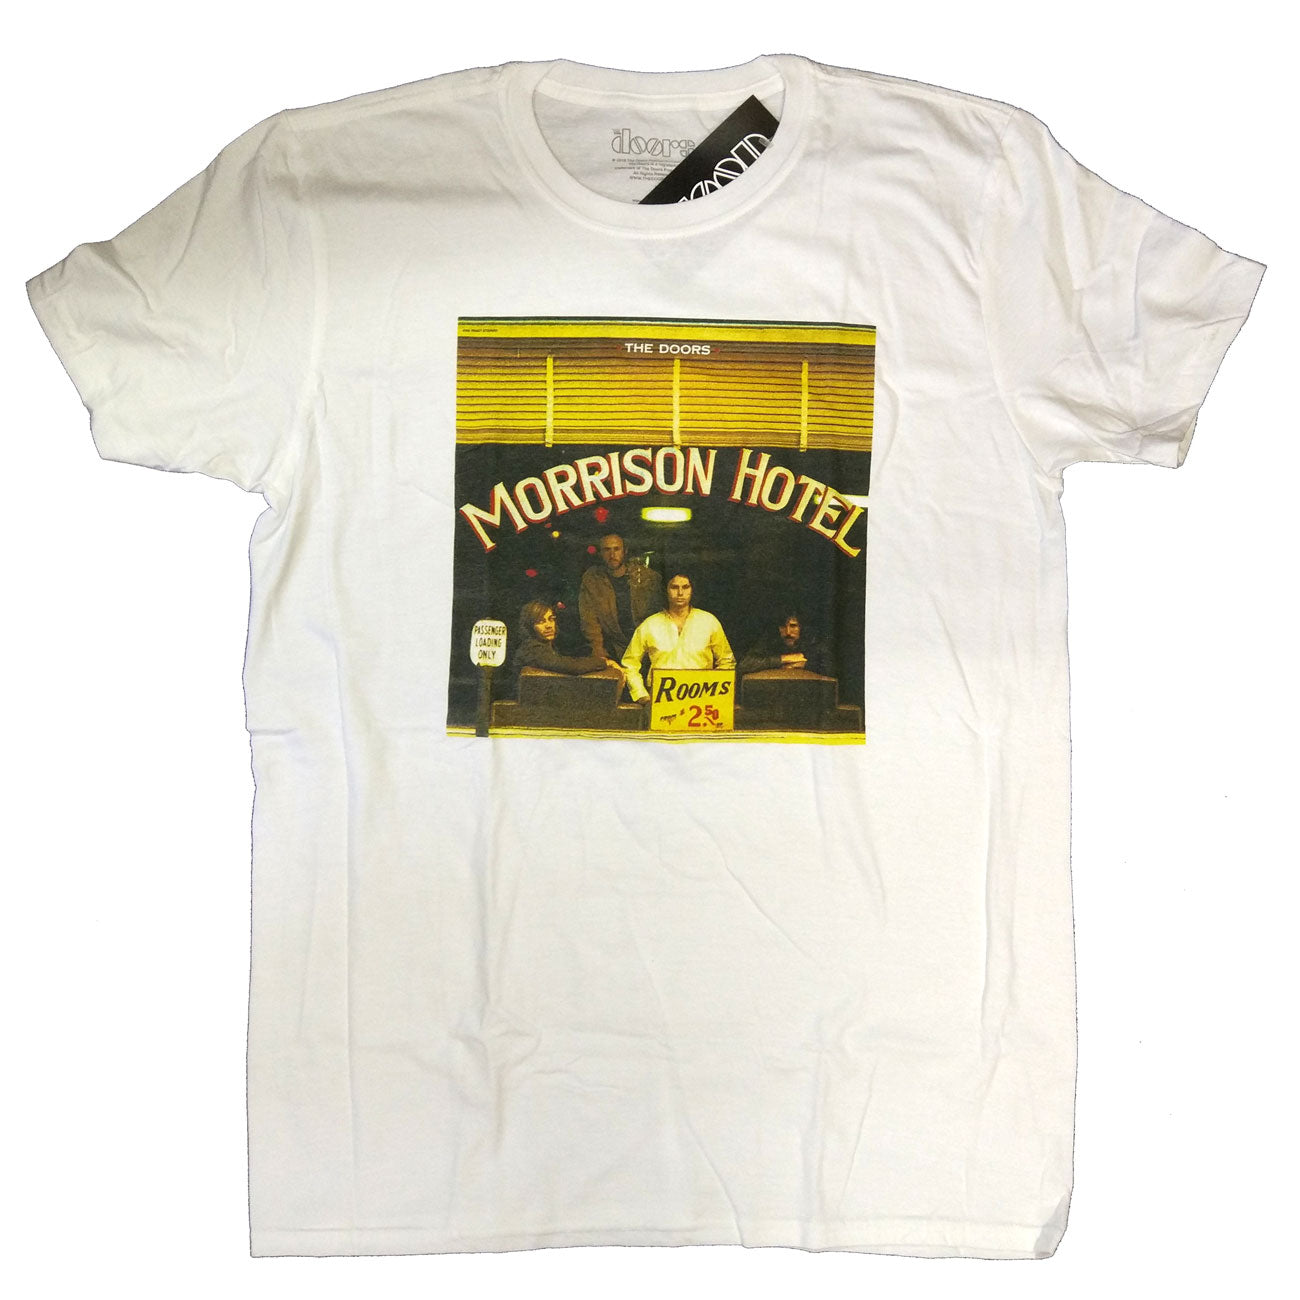 The Doors T Shirt - Morrison Hotel 100% Official Doors Merchandise